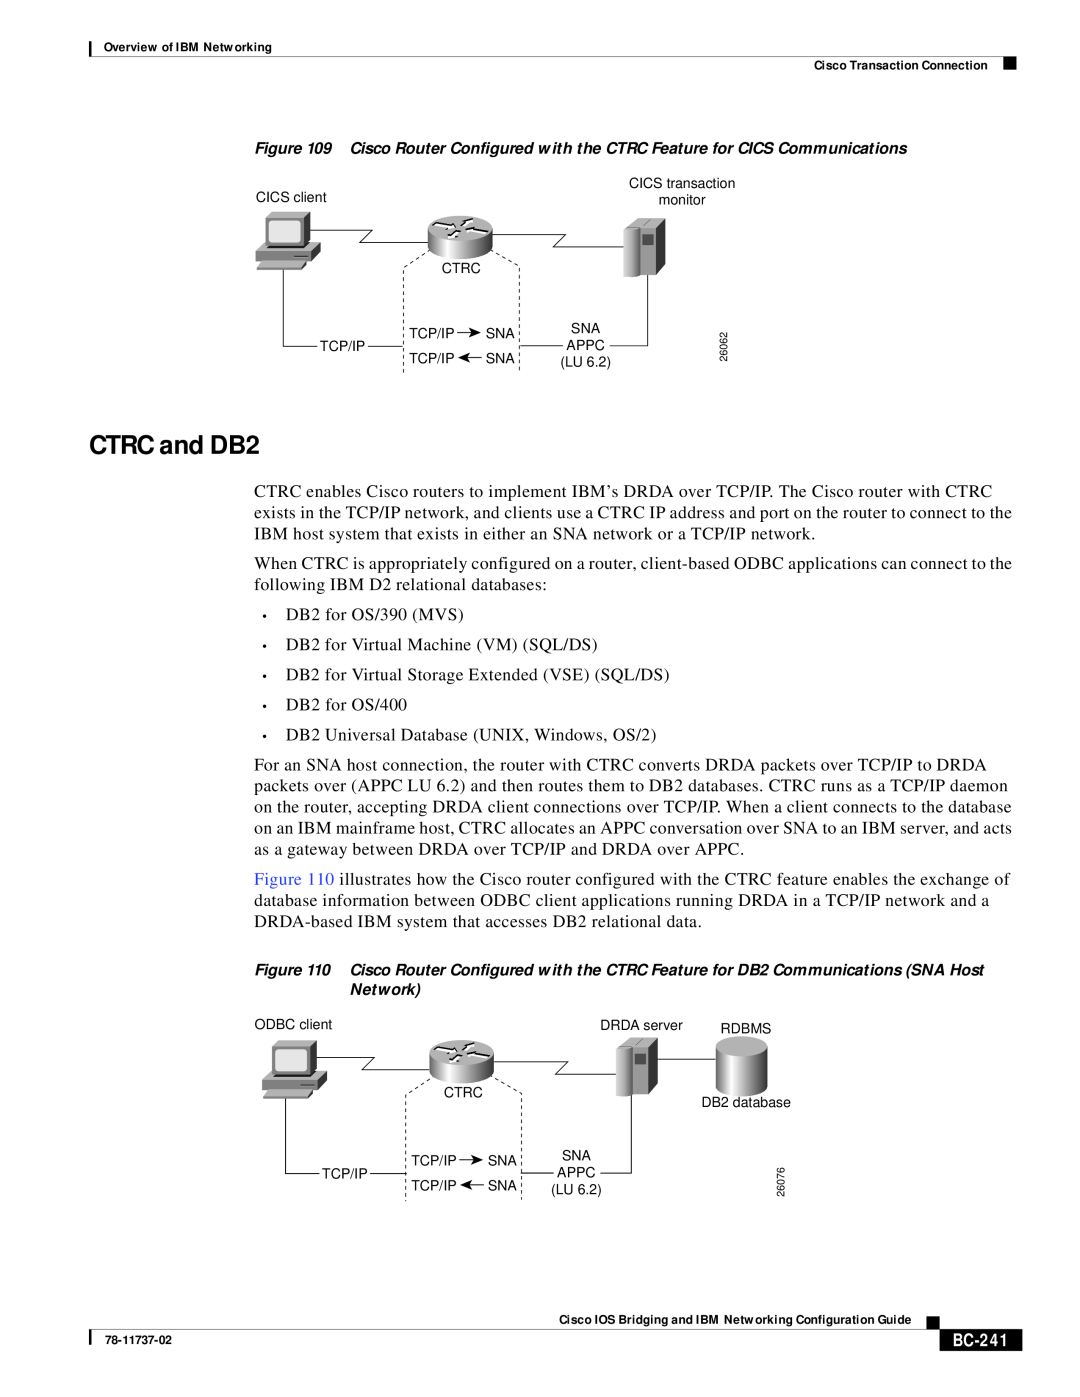 IBM BC-201 manual CTRC and DB2, BC-241 